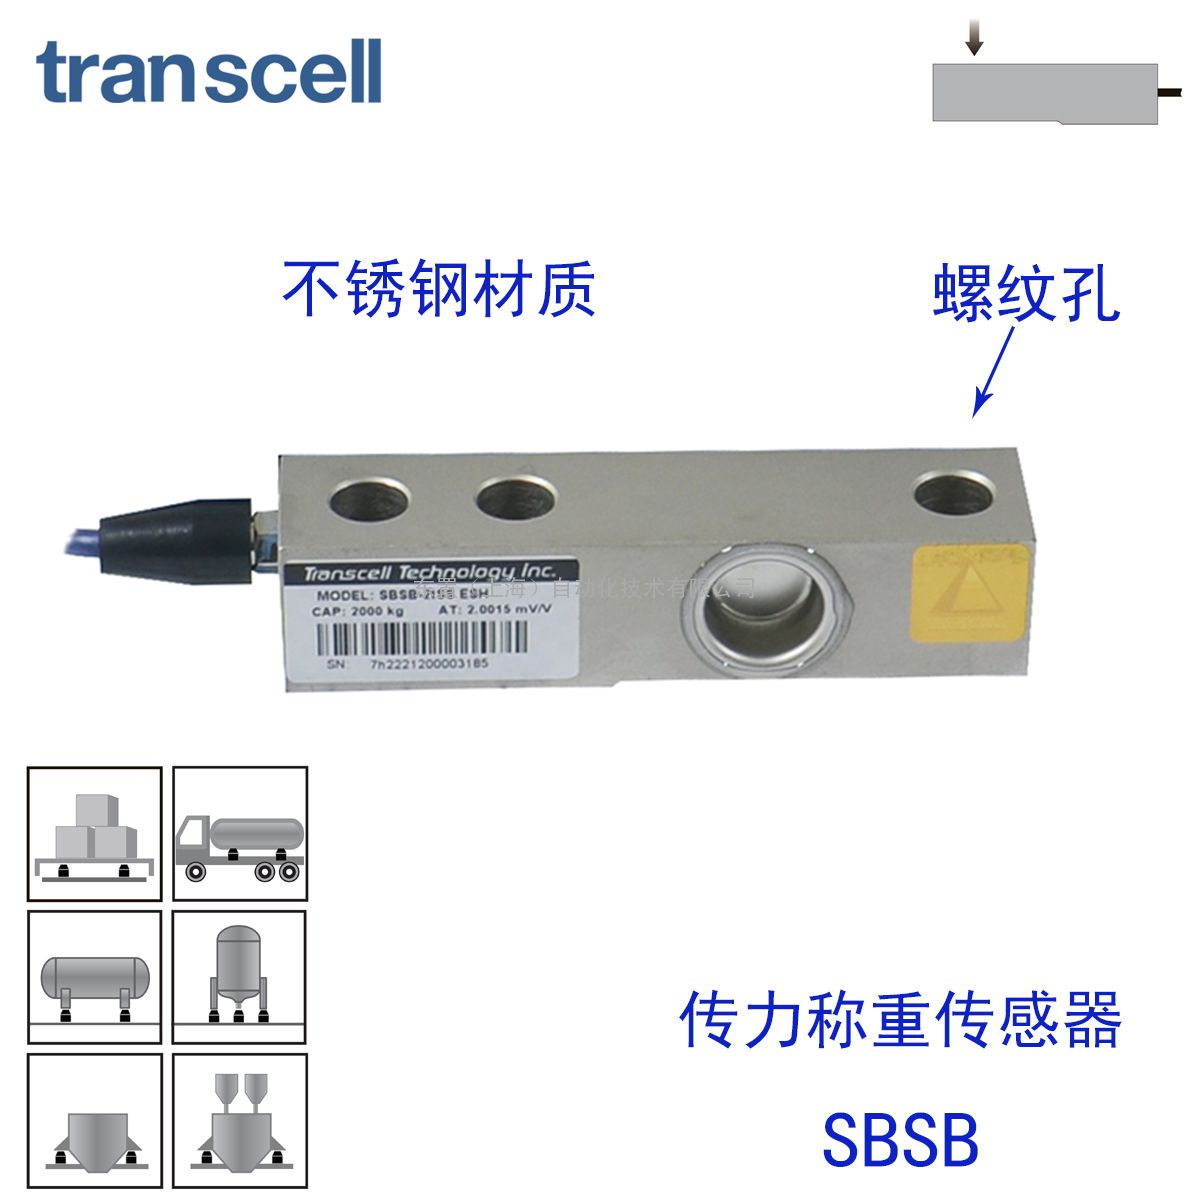  transcell   ƿ ش SBSB